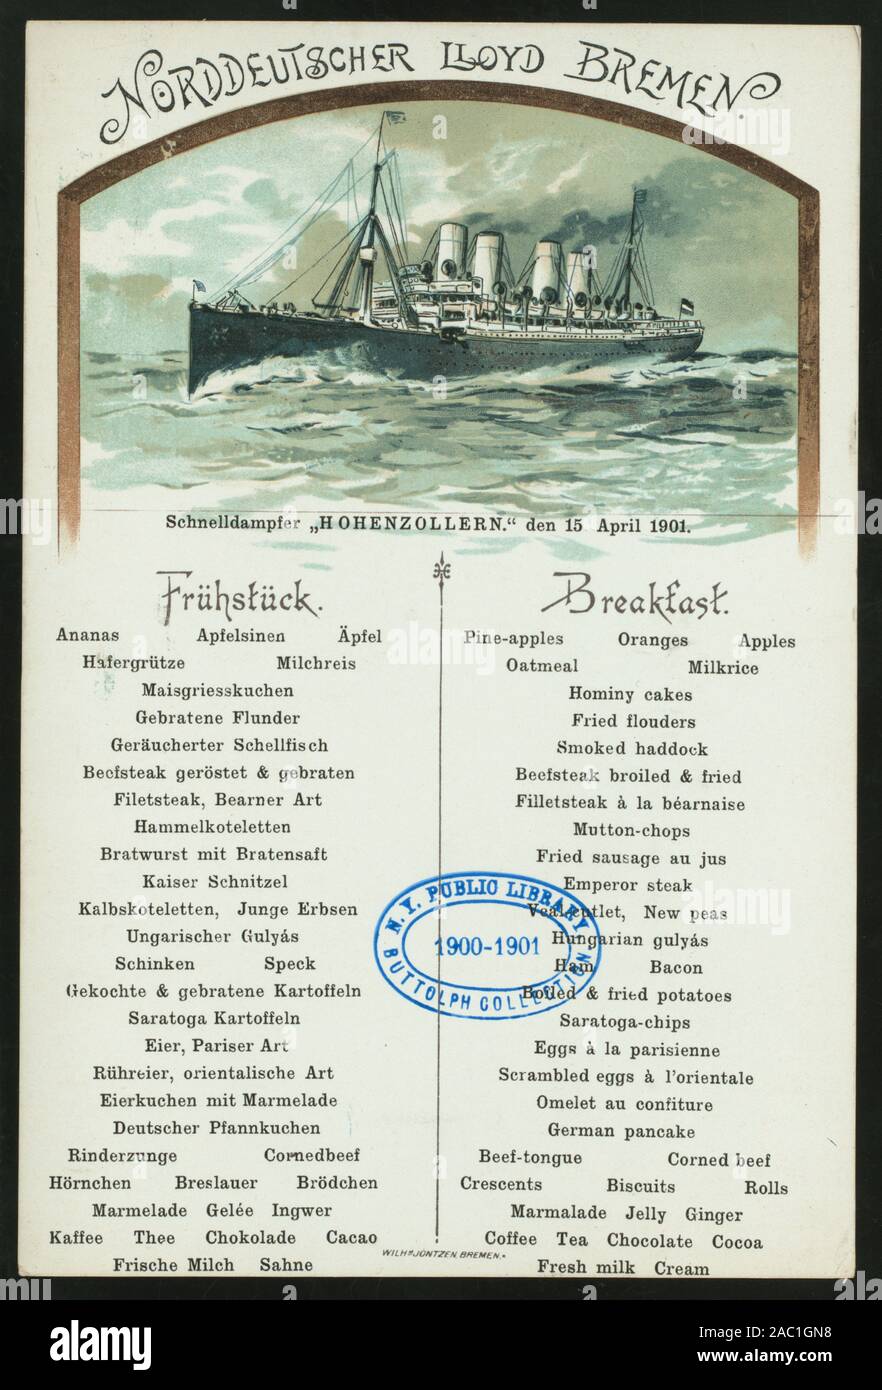 FRUHSTUCK (detenute da) NORDDEUTSCHER LLOYD DI BREMA (a) SCHNELLDAMPFER HOHENZOLLERN (SS;) tedesco e inglese; illustrazione del piroscafo in mare Citazione/Riferimento: 1901-0924; FRUHSTUCK [detenute da] NORDDEUTSCHER LLOYD BREMEN [at] SCHNELLDAMPFER HOHENZOLLERN (SS;) Foto Stock